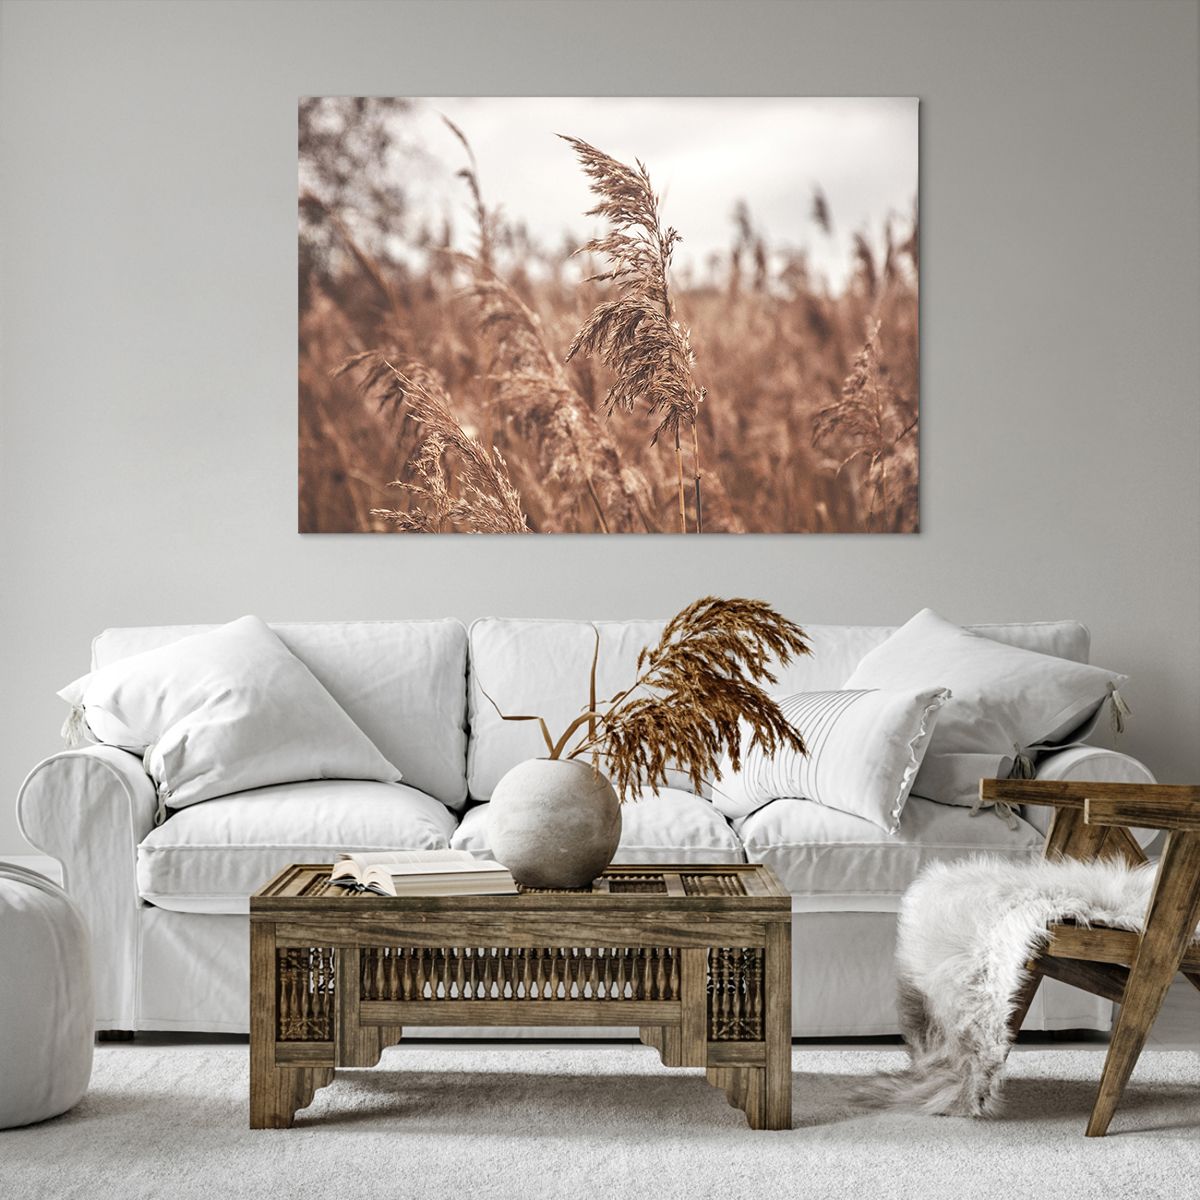 Bild auf Leinwand Landschaft, Bild auf Leinwand Wiese, Bild auf Leinwand Natur, Bild auf Leinwand Weizen, Bild auf Leinwand Müsli